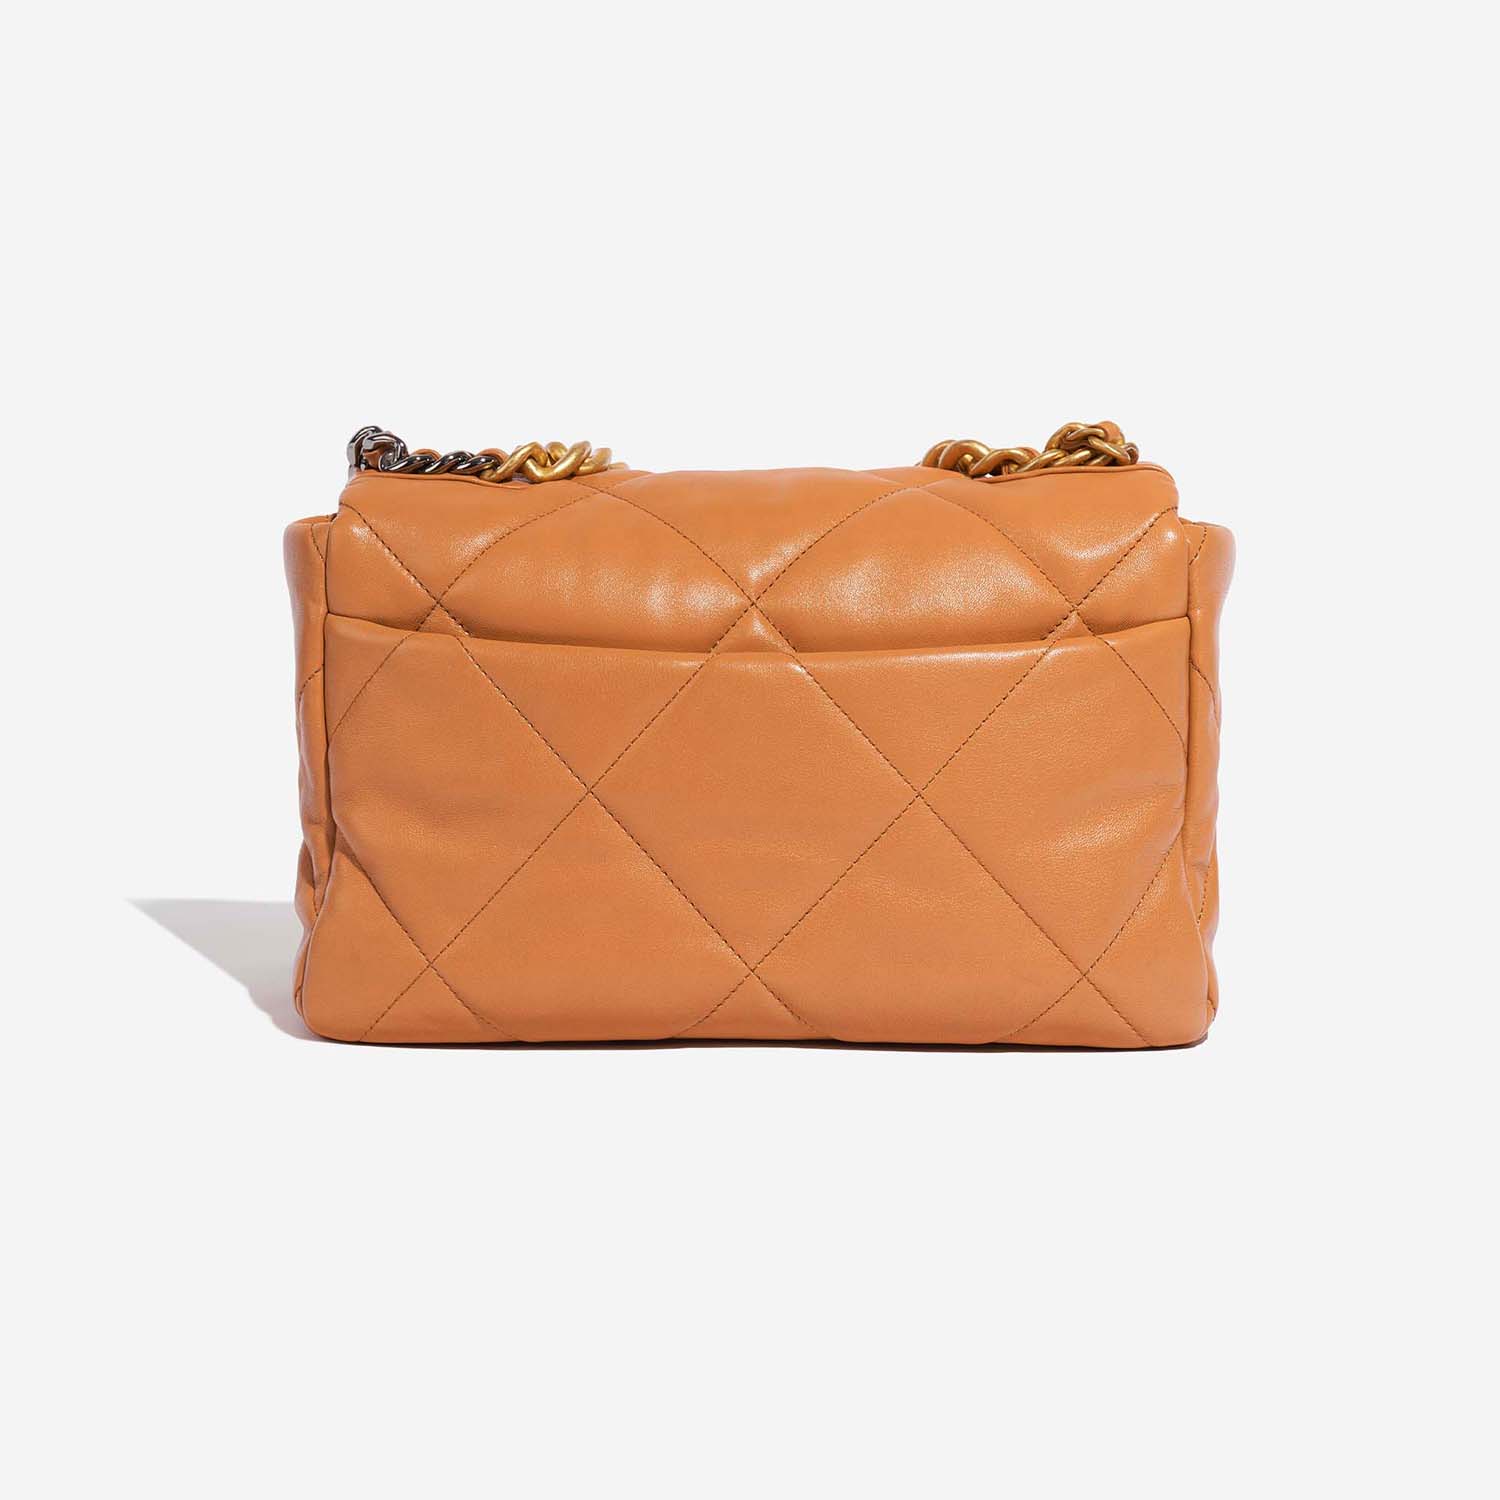 Chanel 19 Large Flap Bag Cognac Back  | Sell your designer bag on Saclab.com